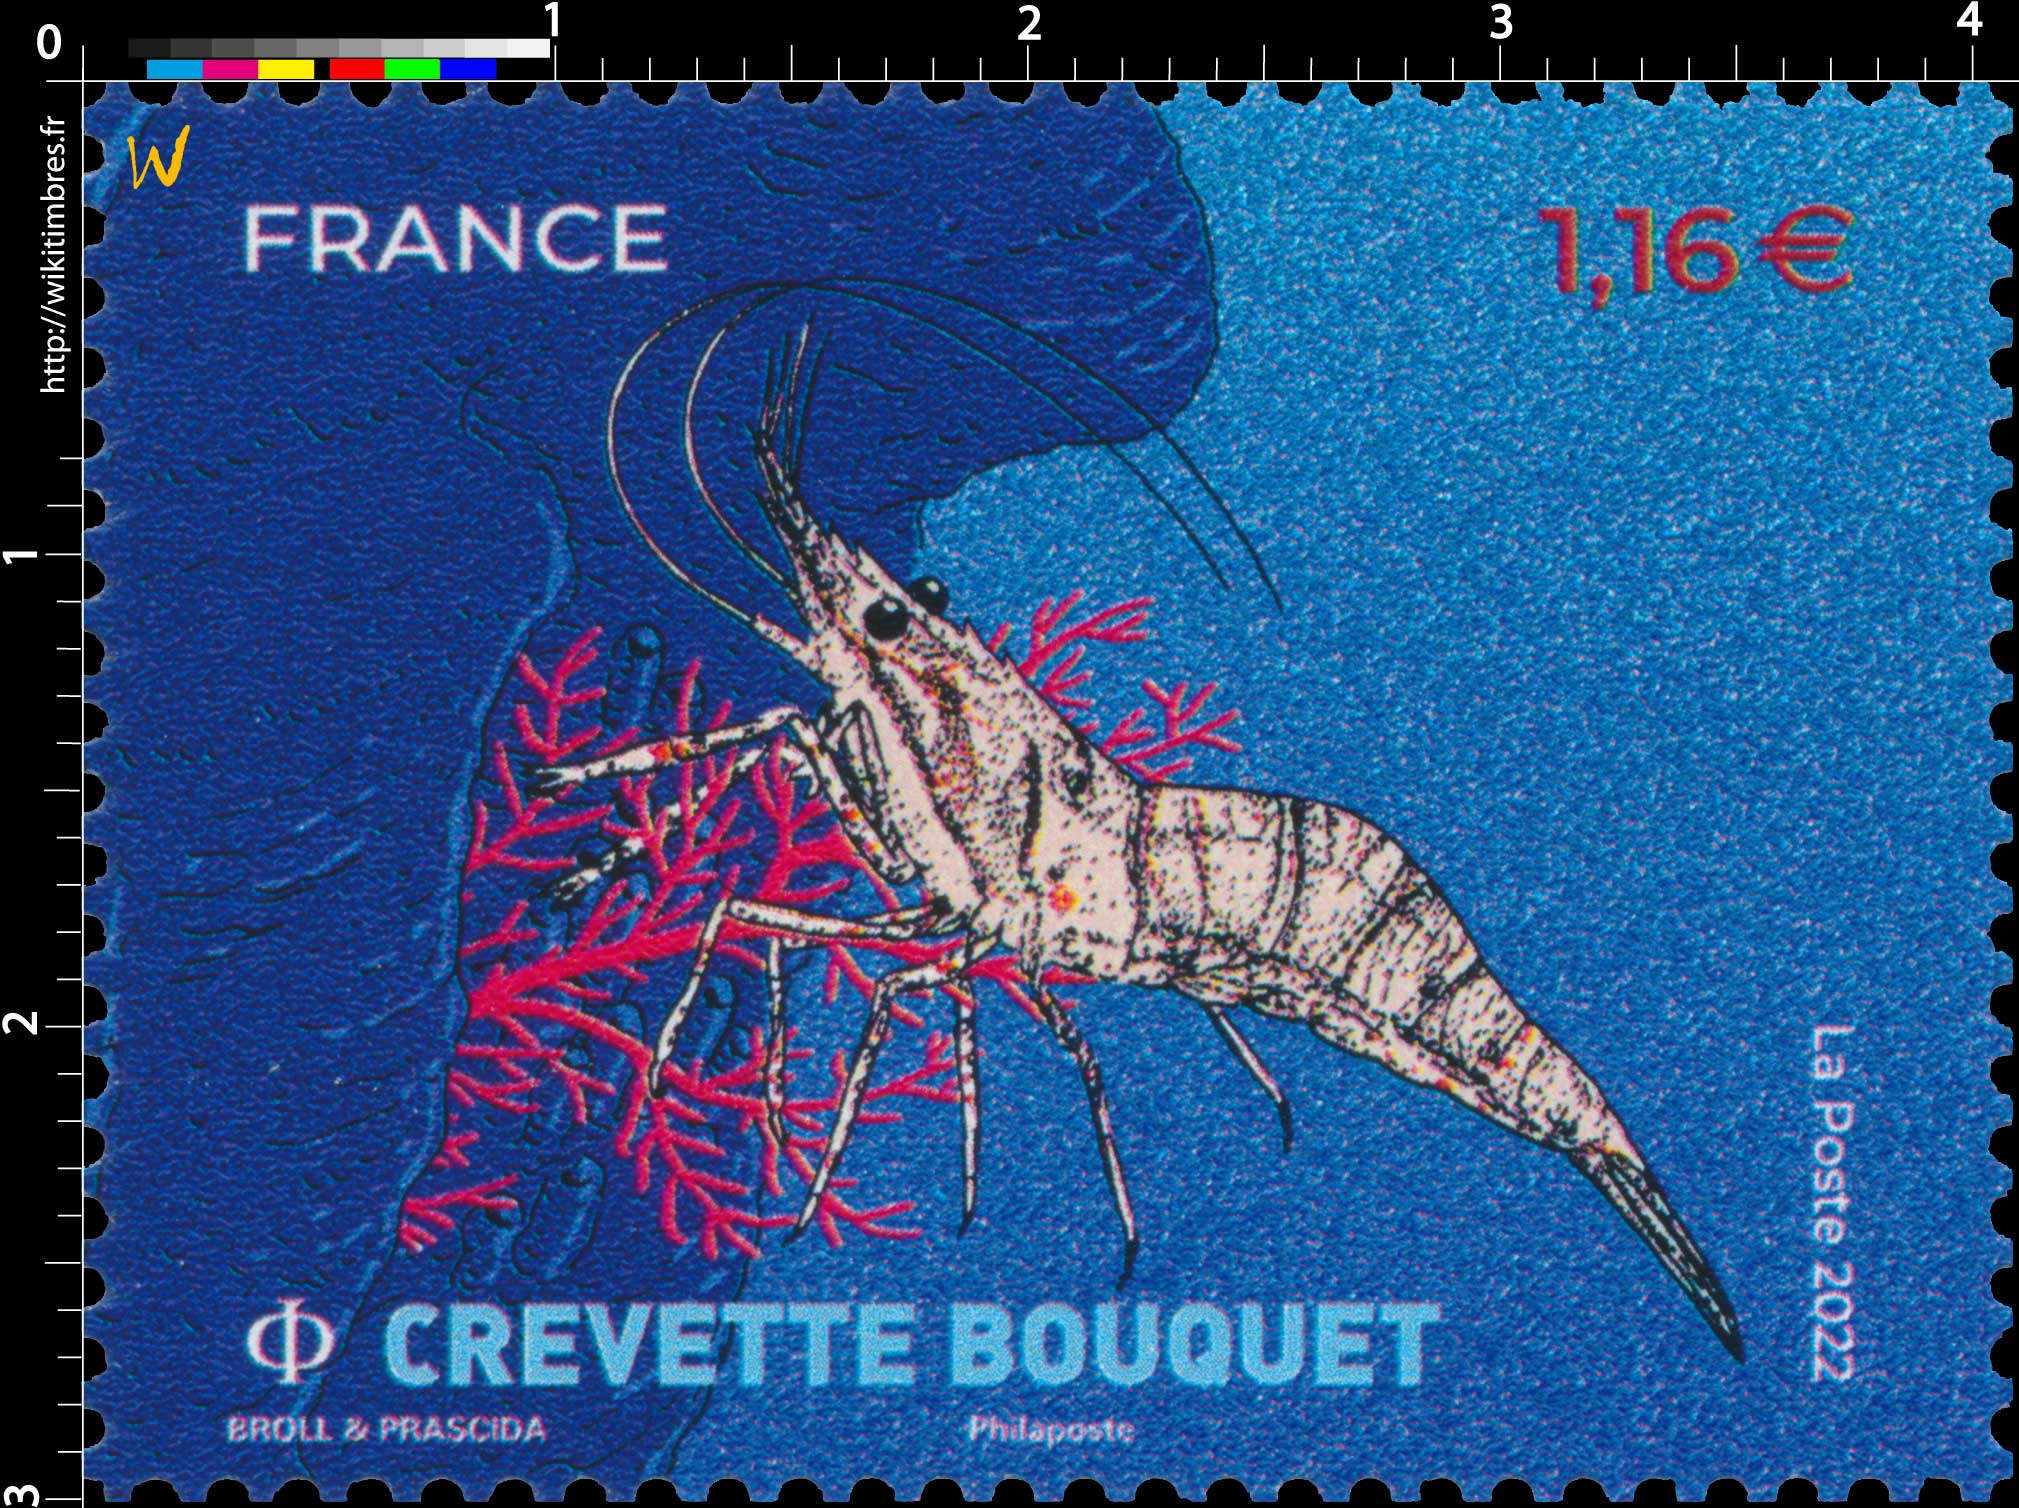 2022 Crevette Bouquet